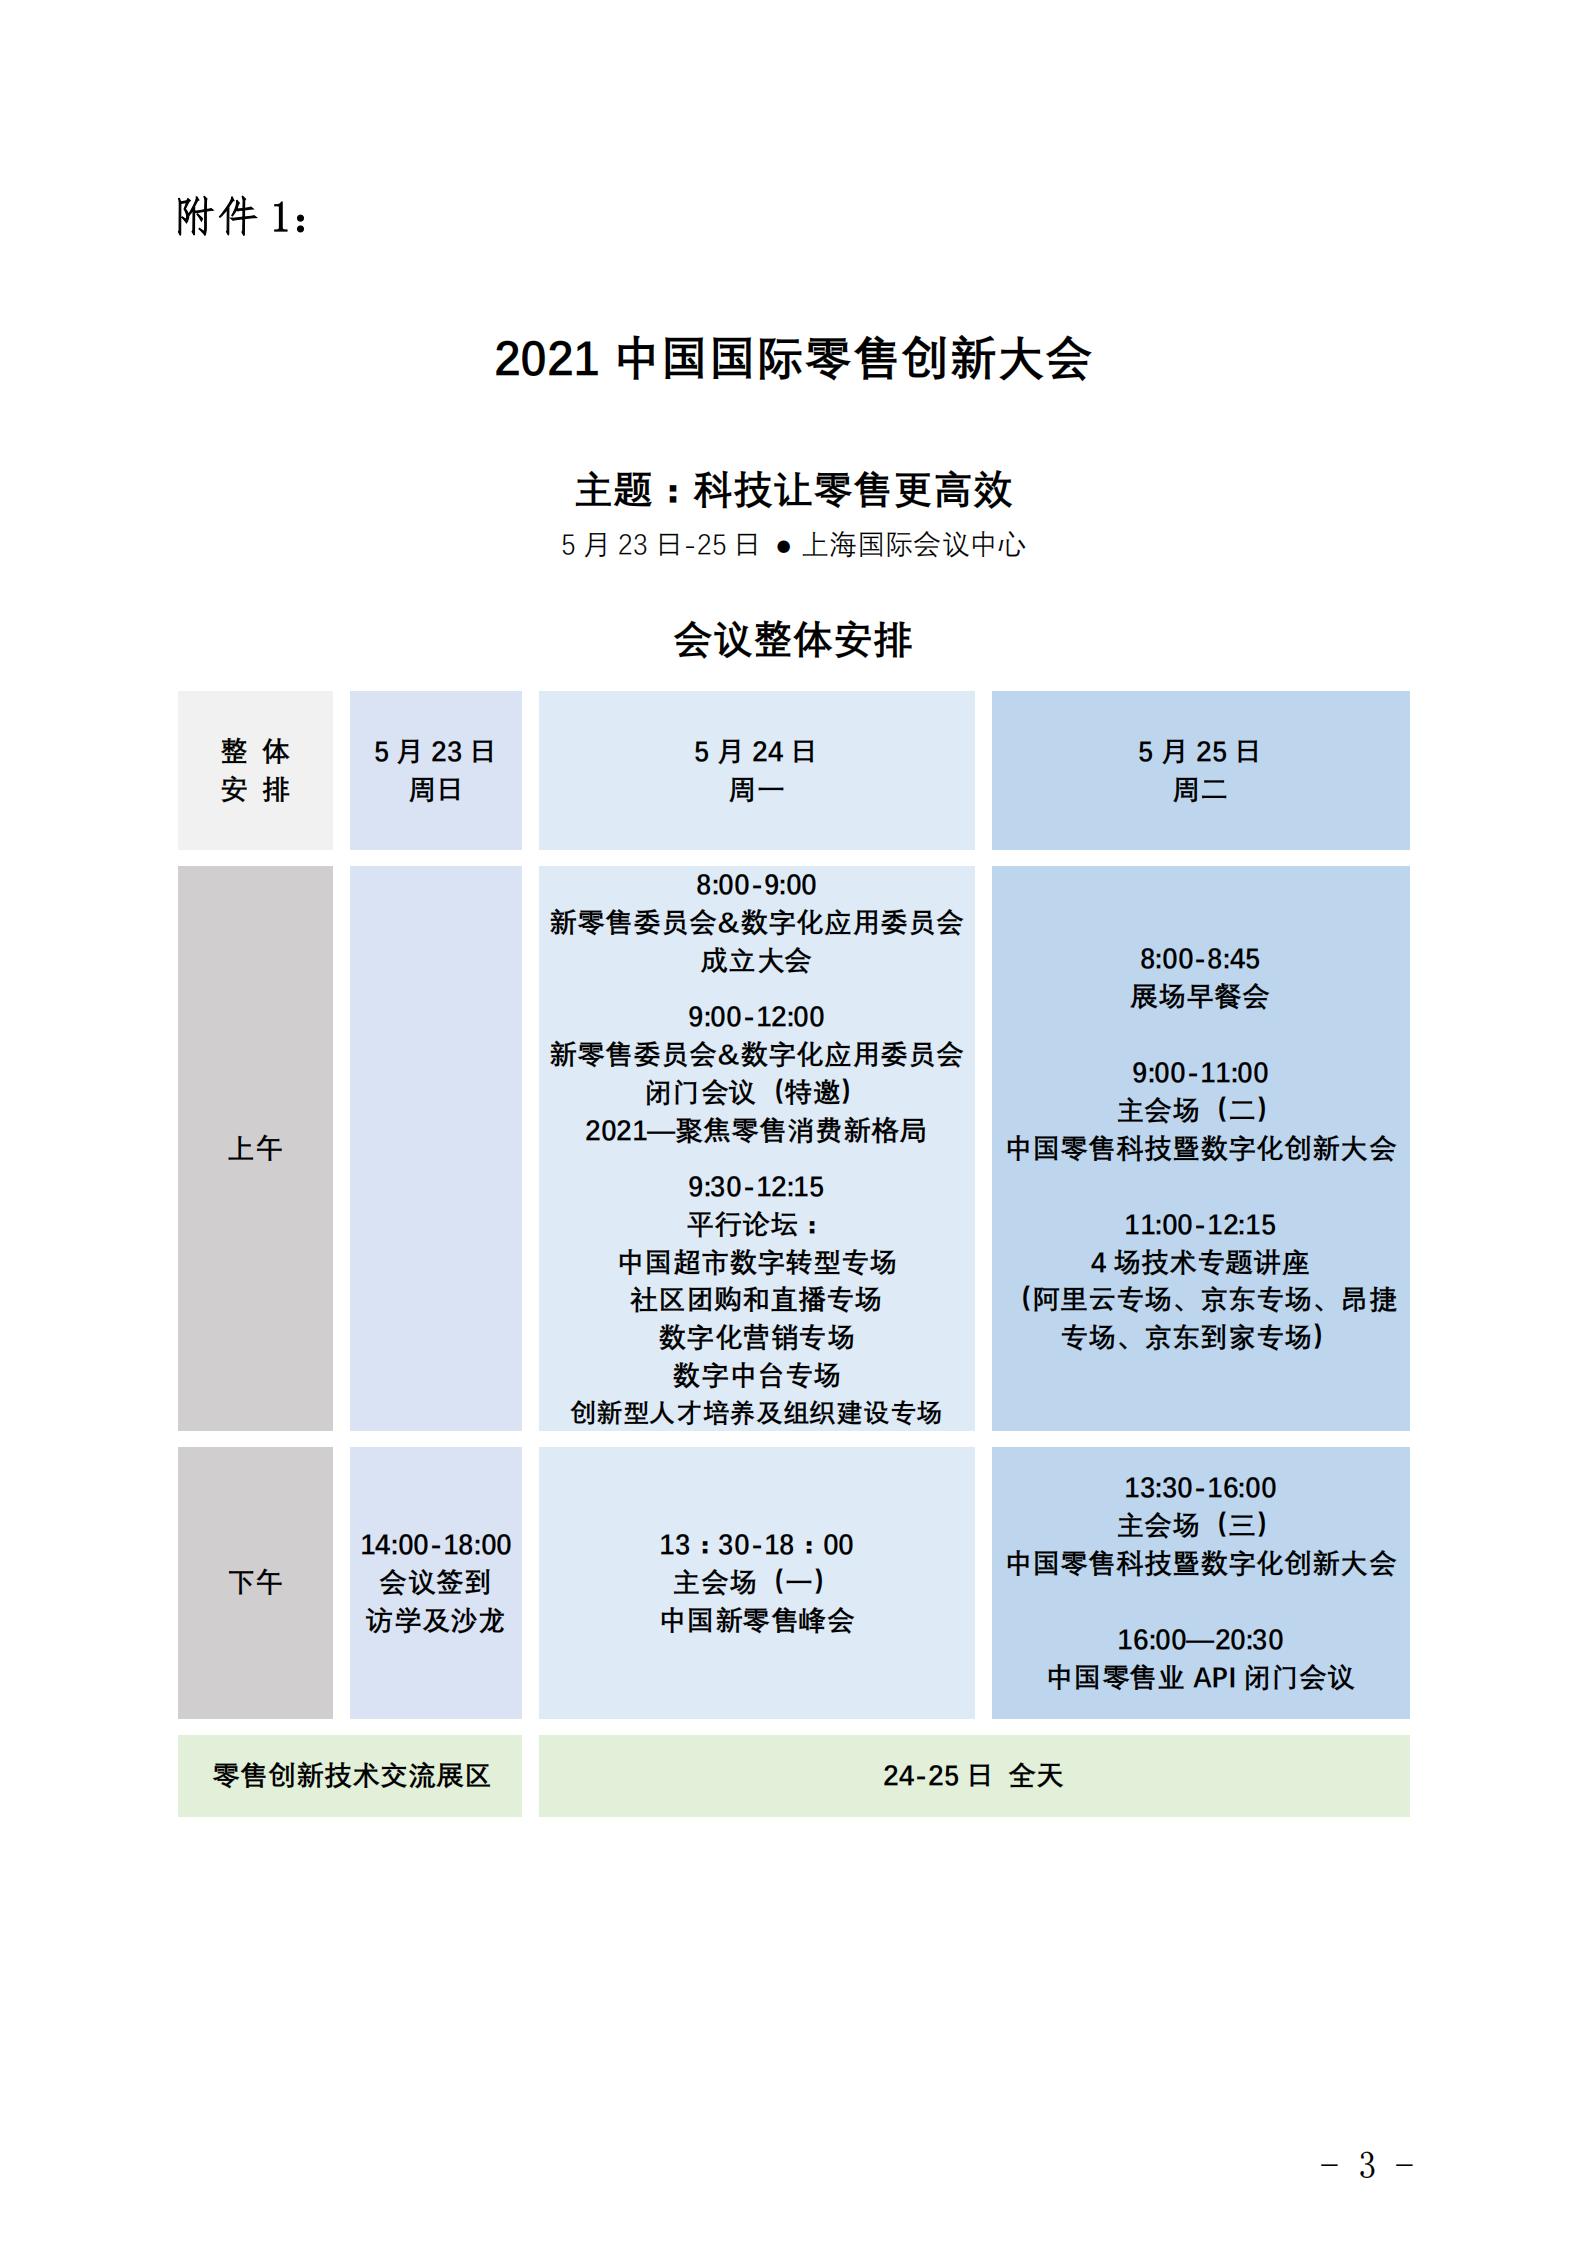 转发《关于邀请参加2021中国国际零售创新大会的通知》的函(图5)